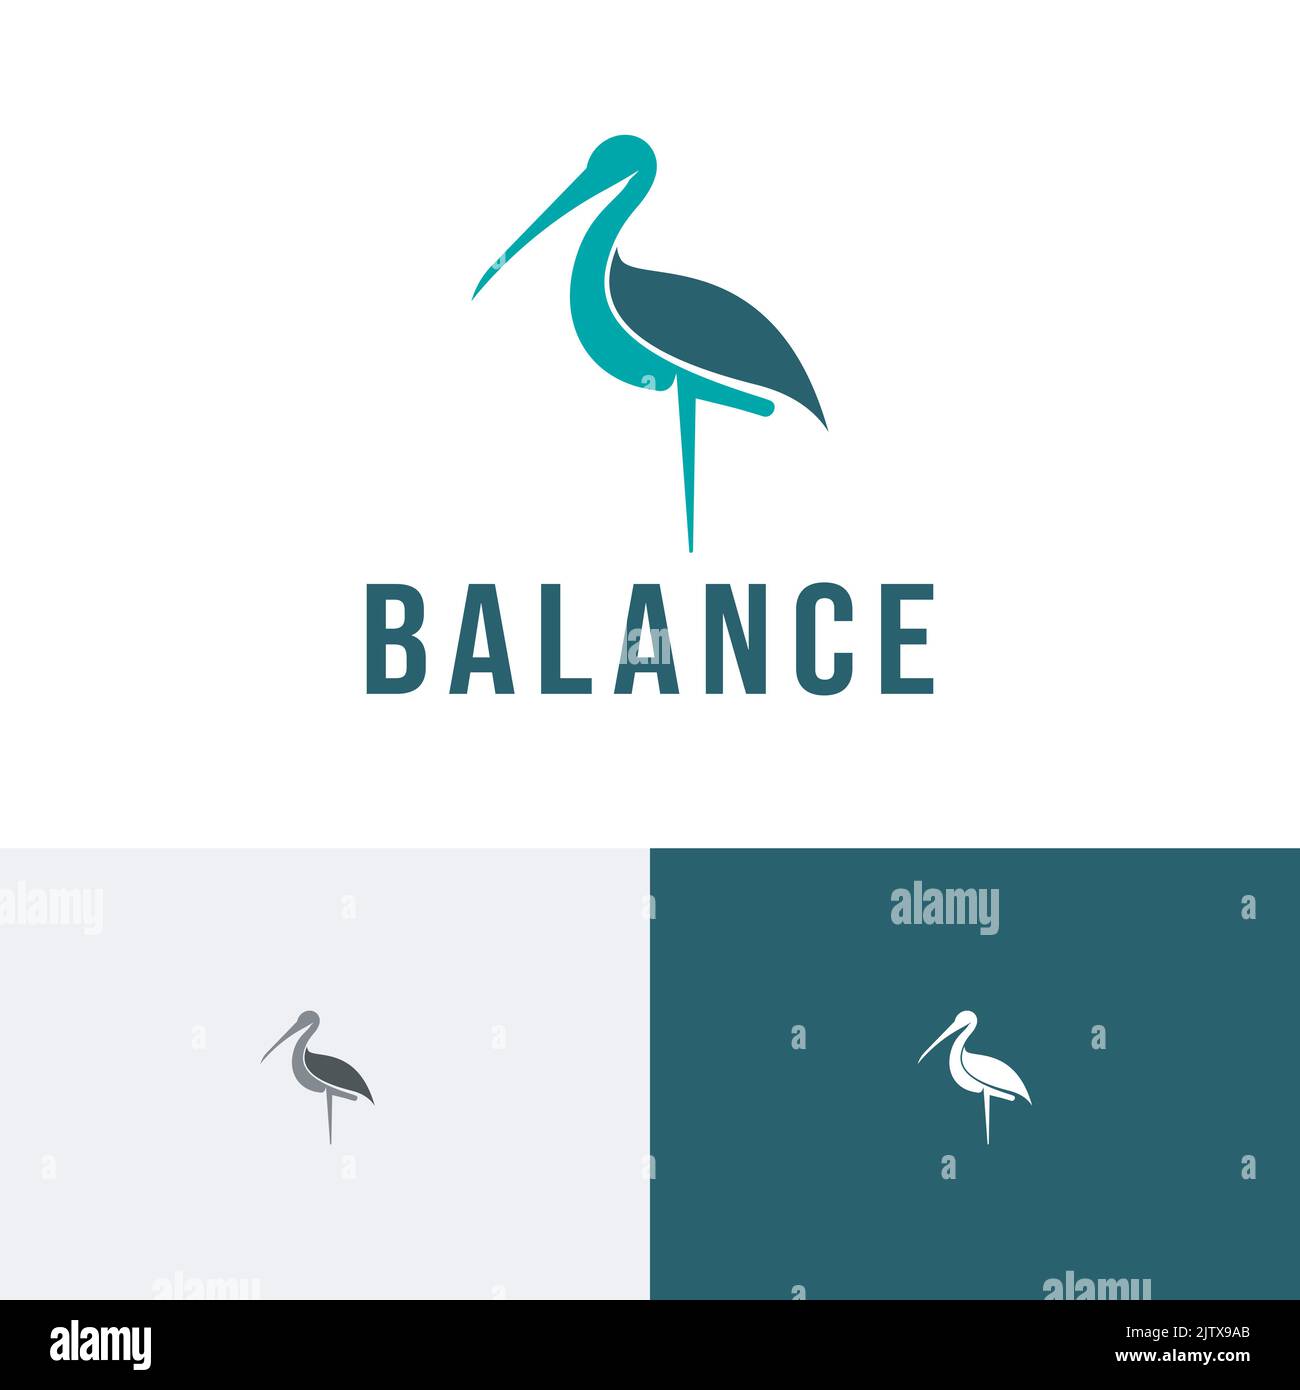 Balance Stand Stork Bird Animal Nature Logo Stock Vector